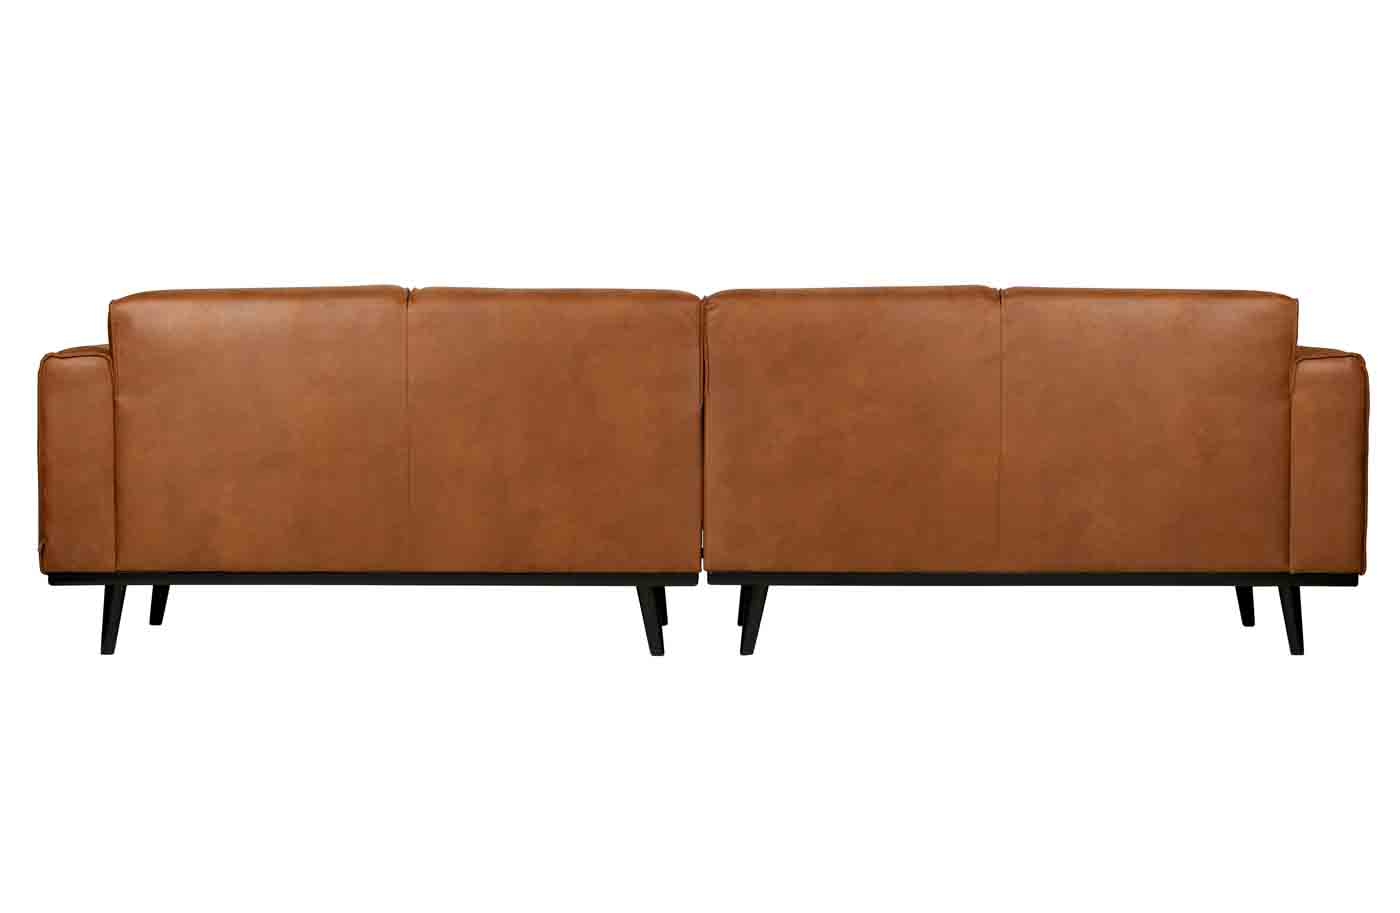 Bigsofa Statement aus hochwertigem recyceltem Leder und Federkernpolsterung für einen hohen Sitzkomfort